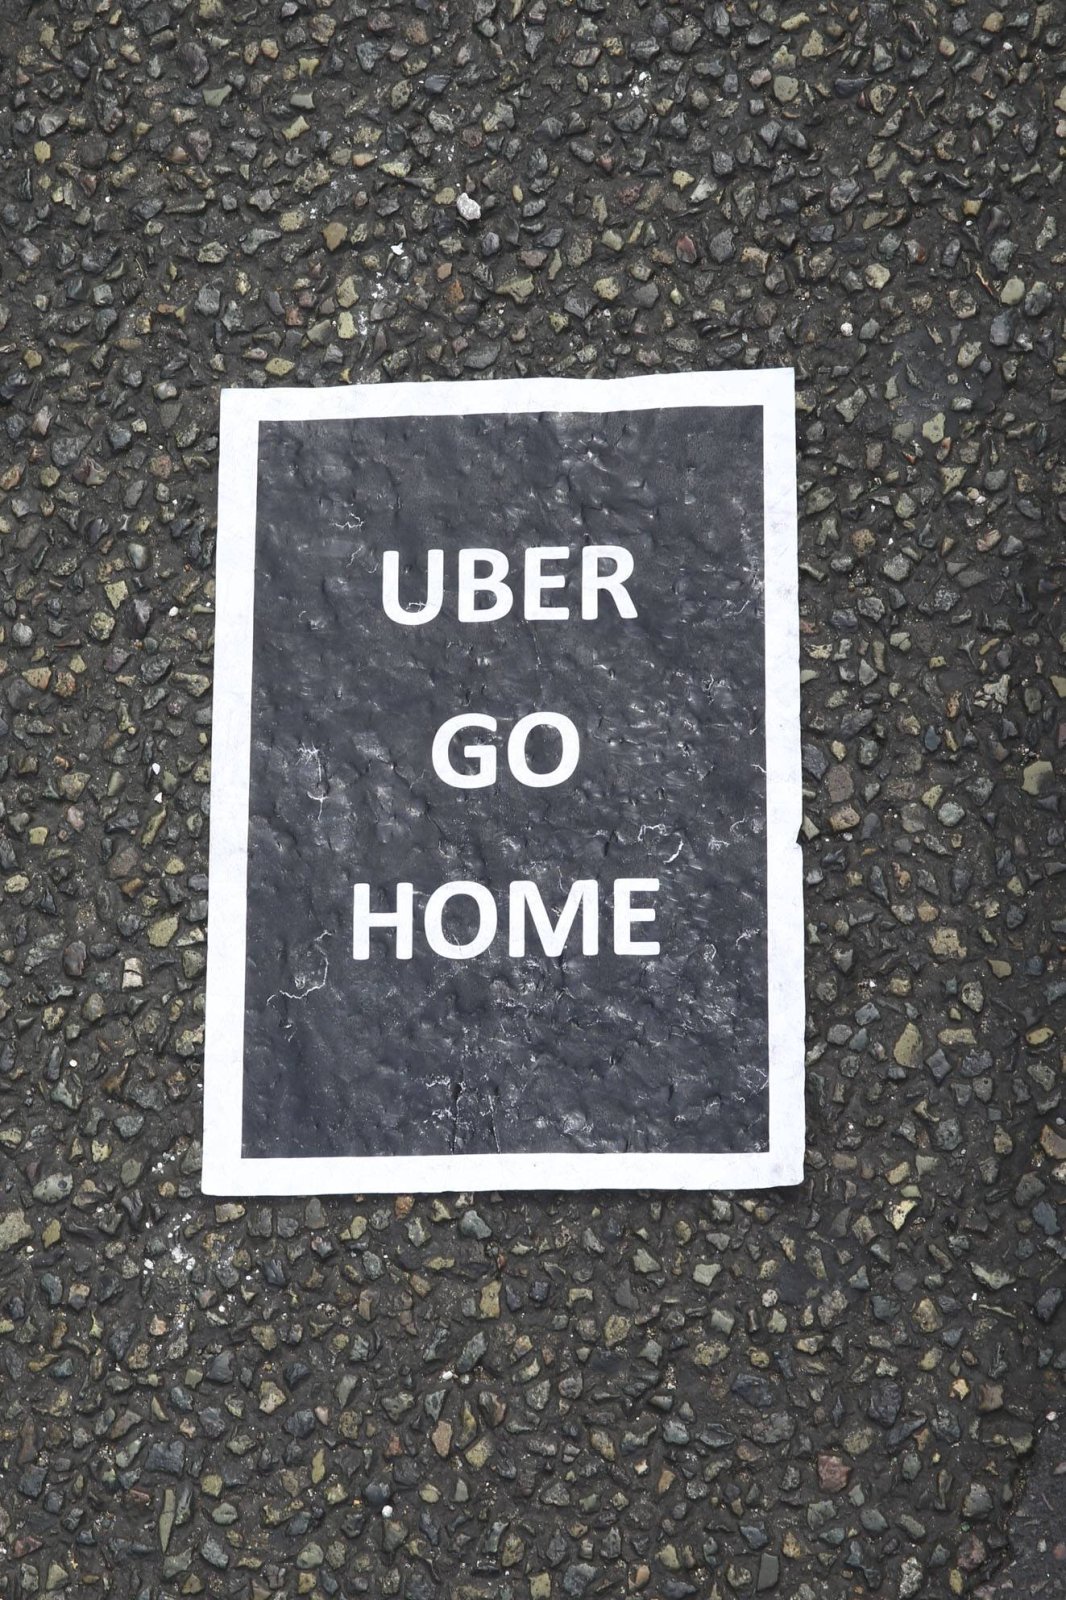 Plakat mit der AUfschrift "Uber go home"